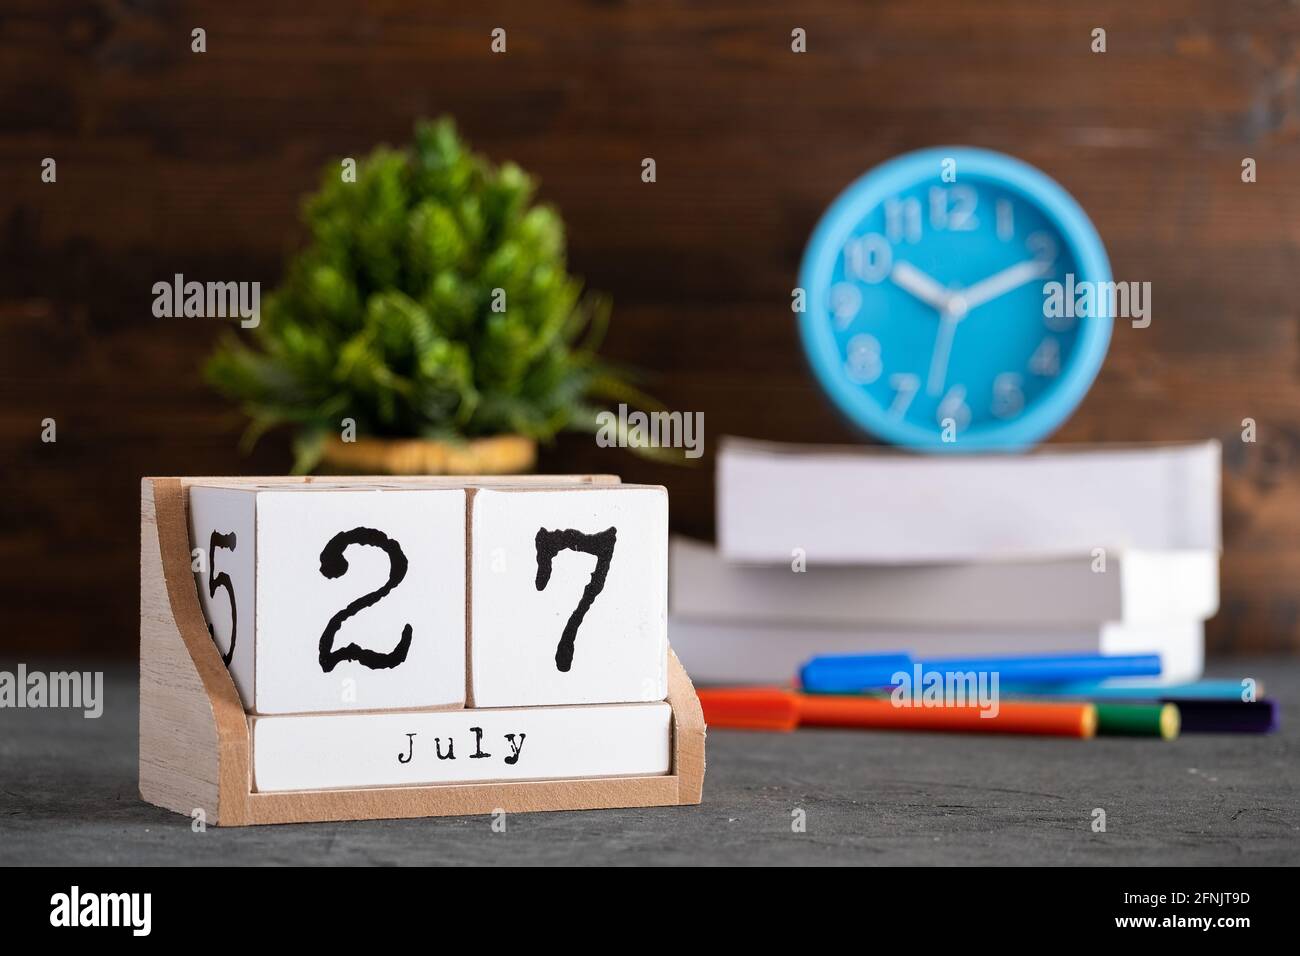 Juli. Juli 27 Holzwürfelkalender mit unscharfen Objekten auf dem Hintergrund. Stockfoto